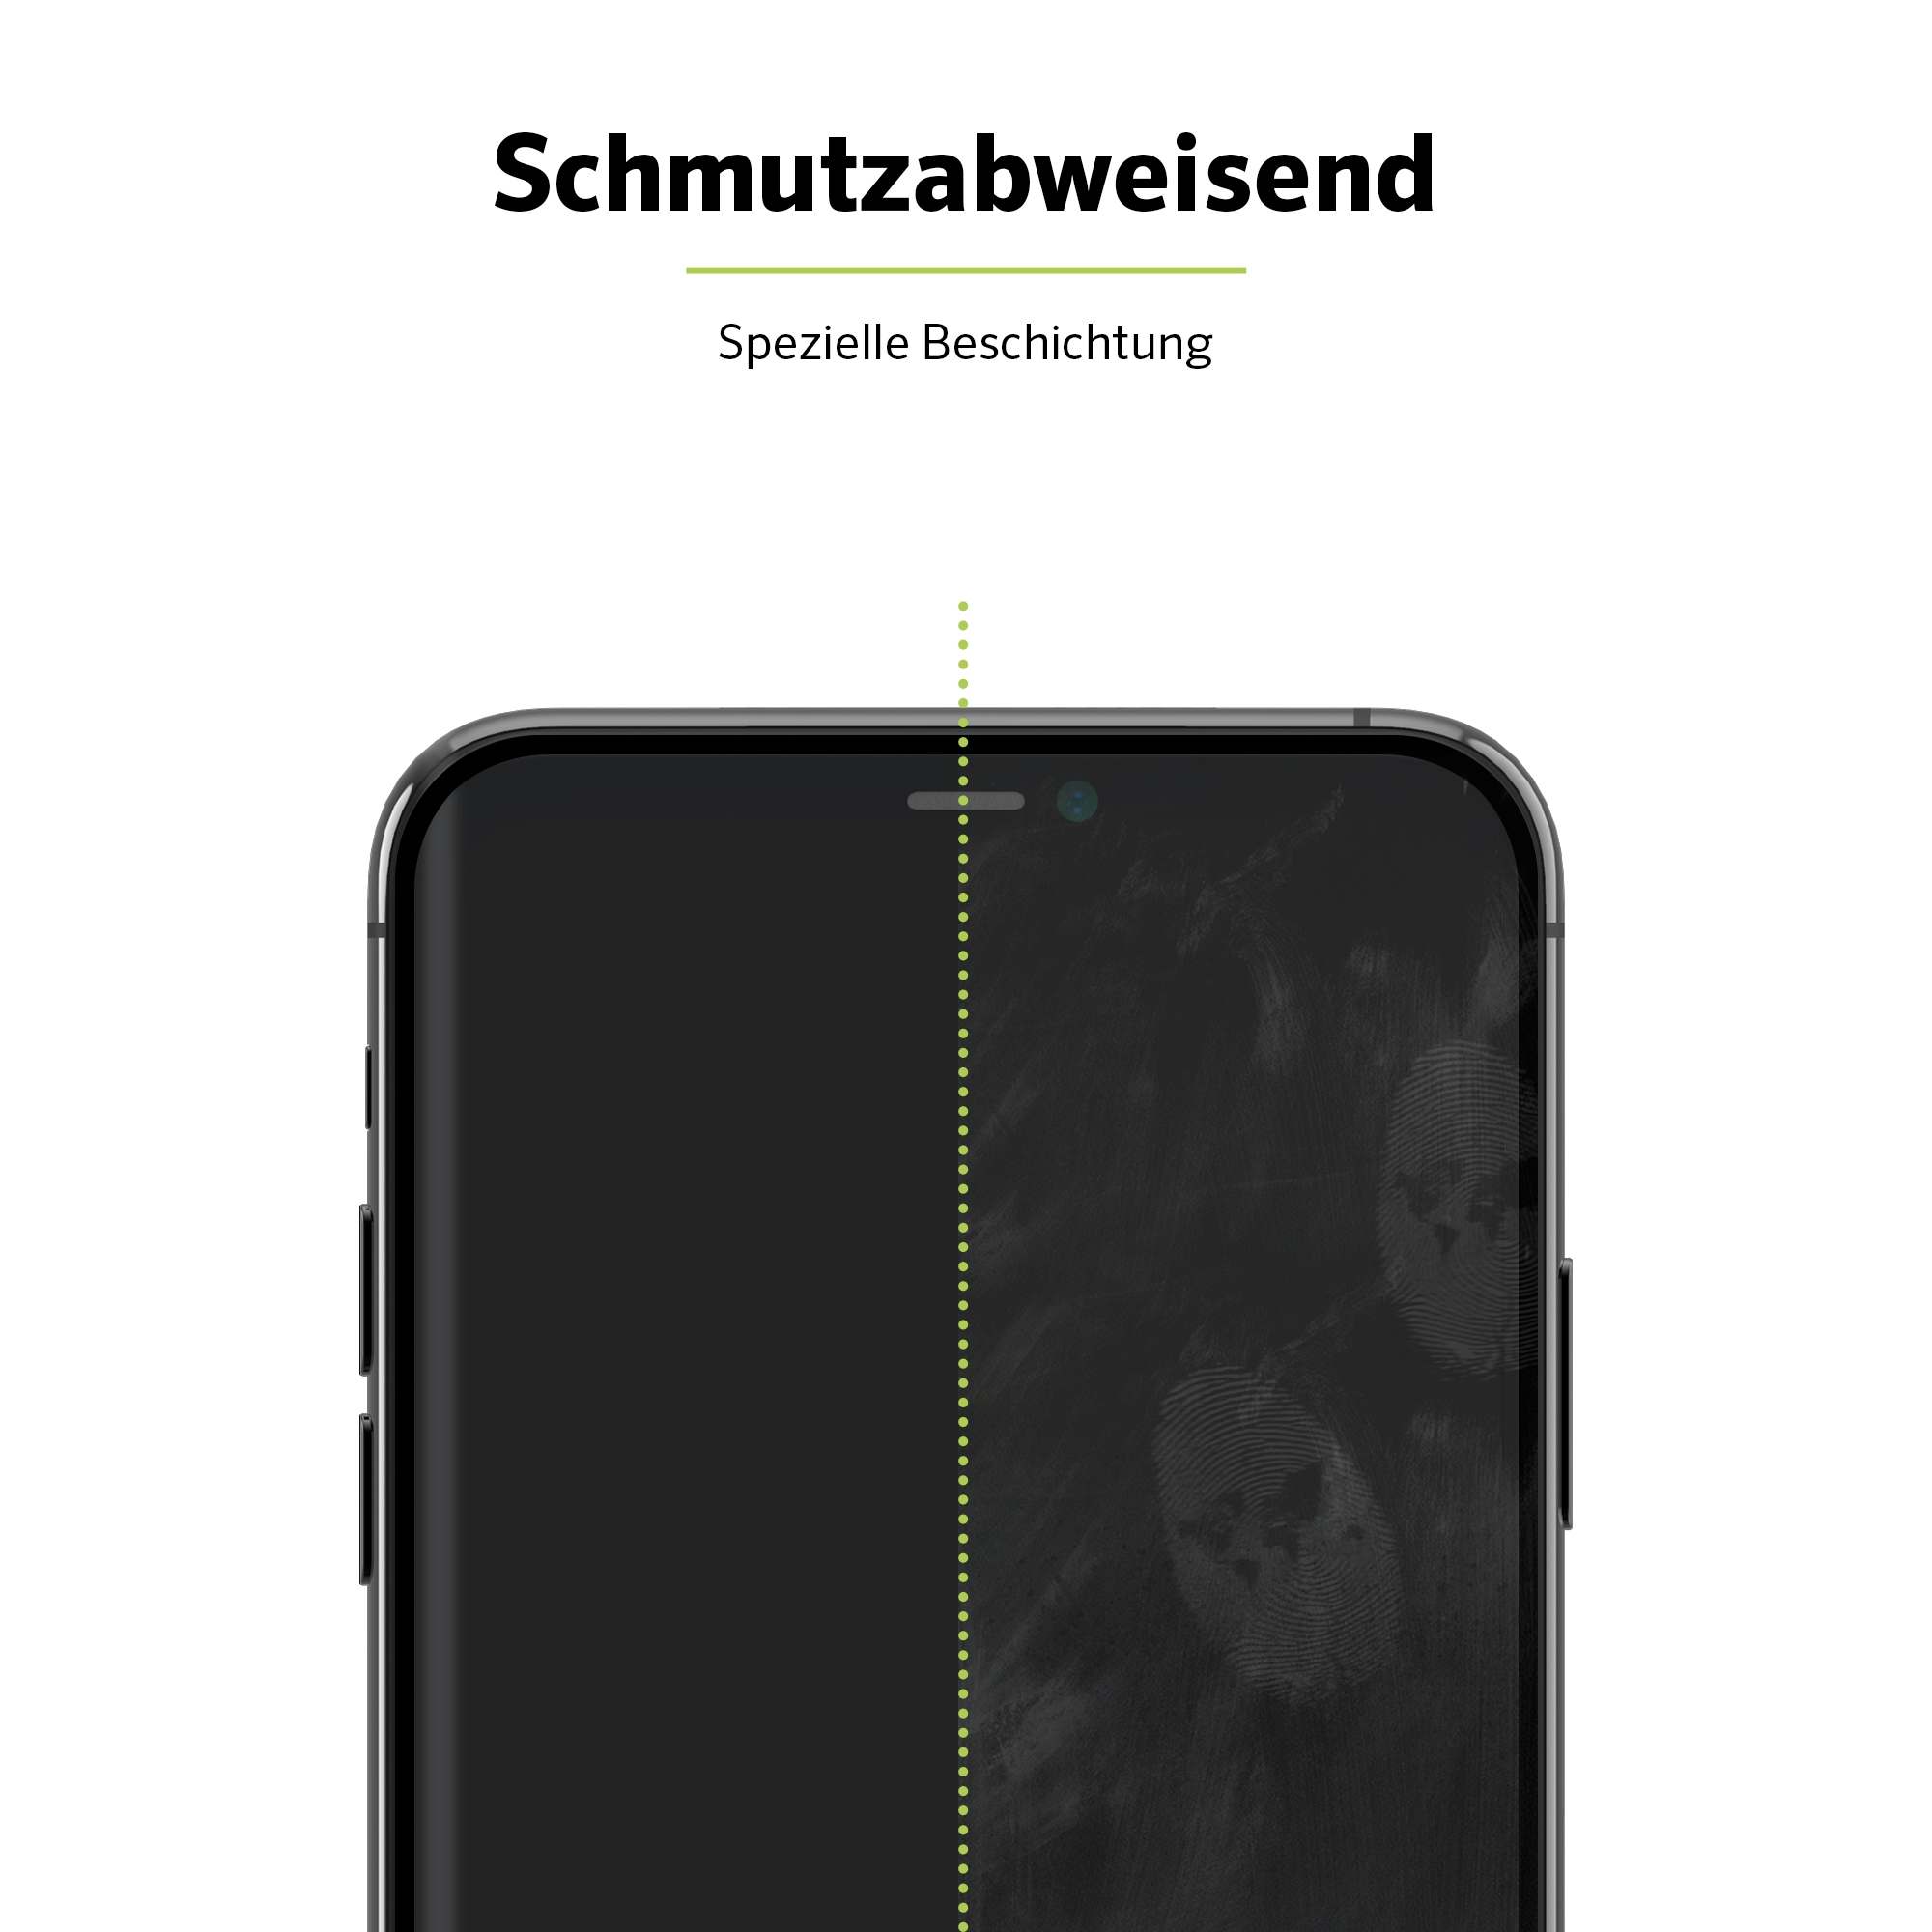 ARTWIZZ CurvedDisplay 11) Apple Xr iPhone Displayschutz(für (2er Pack) / iPhone